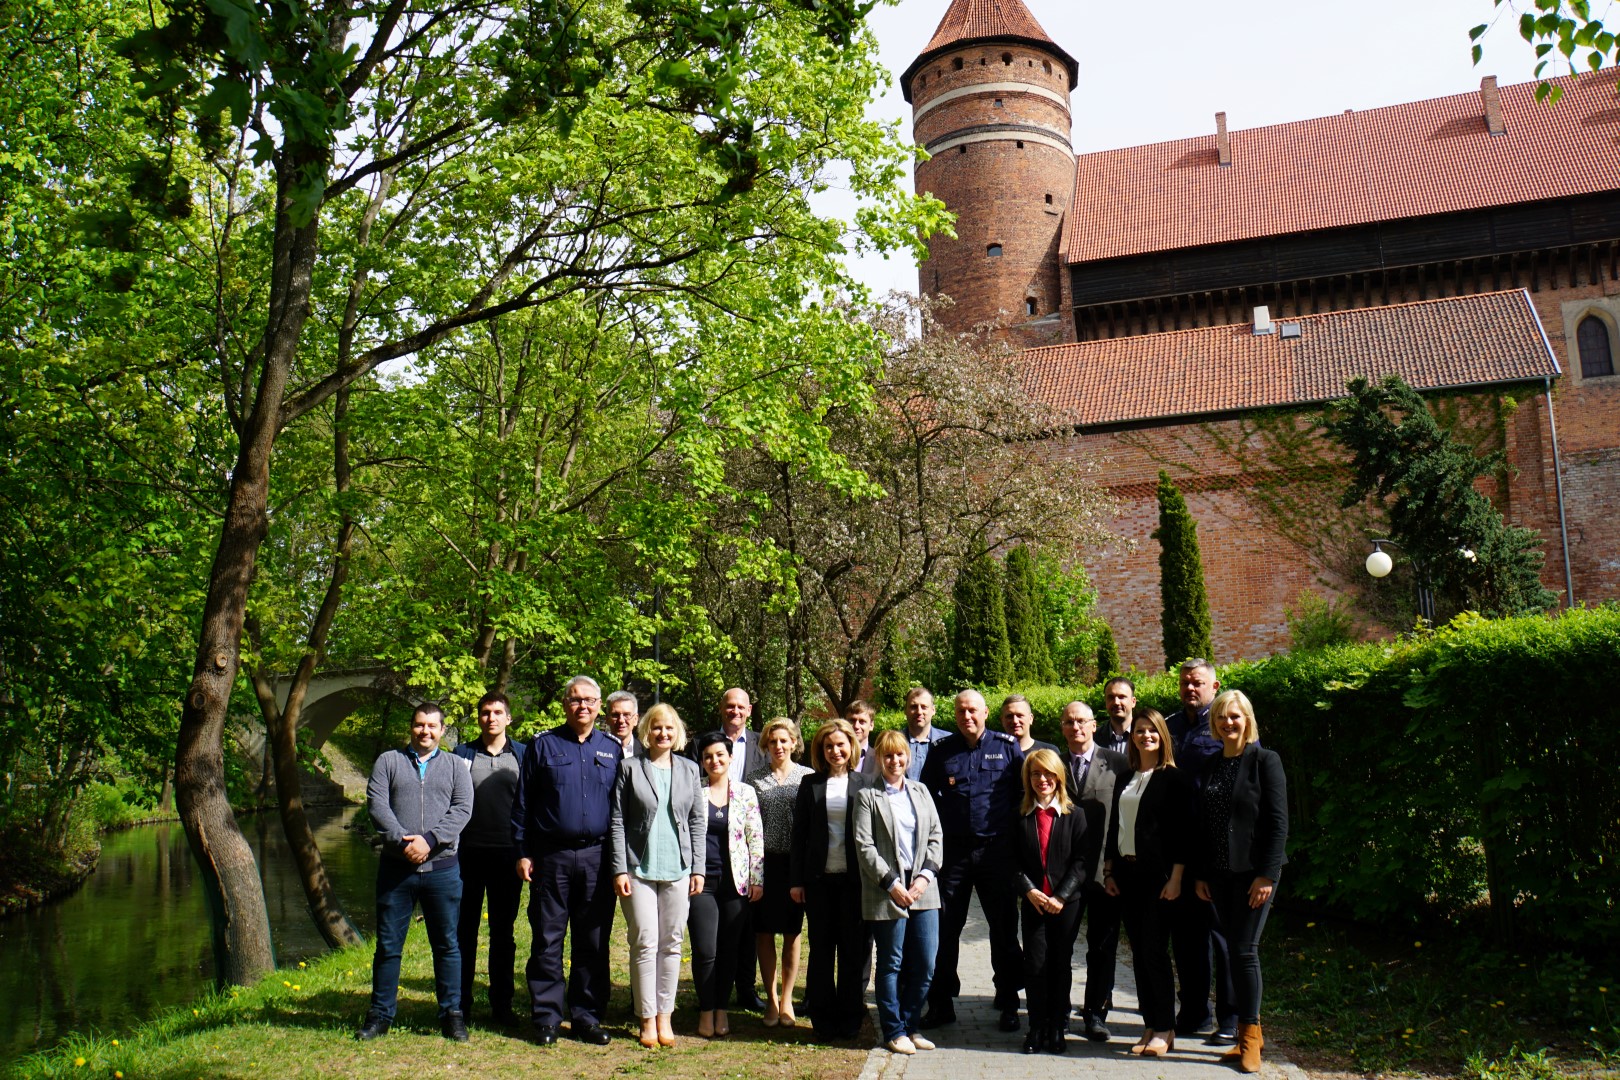 Pamiątkowe zdjęcie uczestników spotkania na tle zamku w Olsztynie